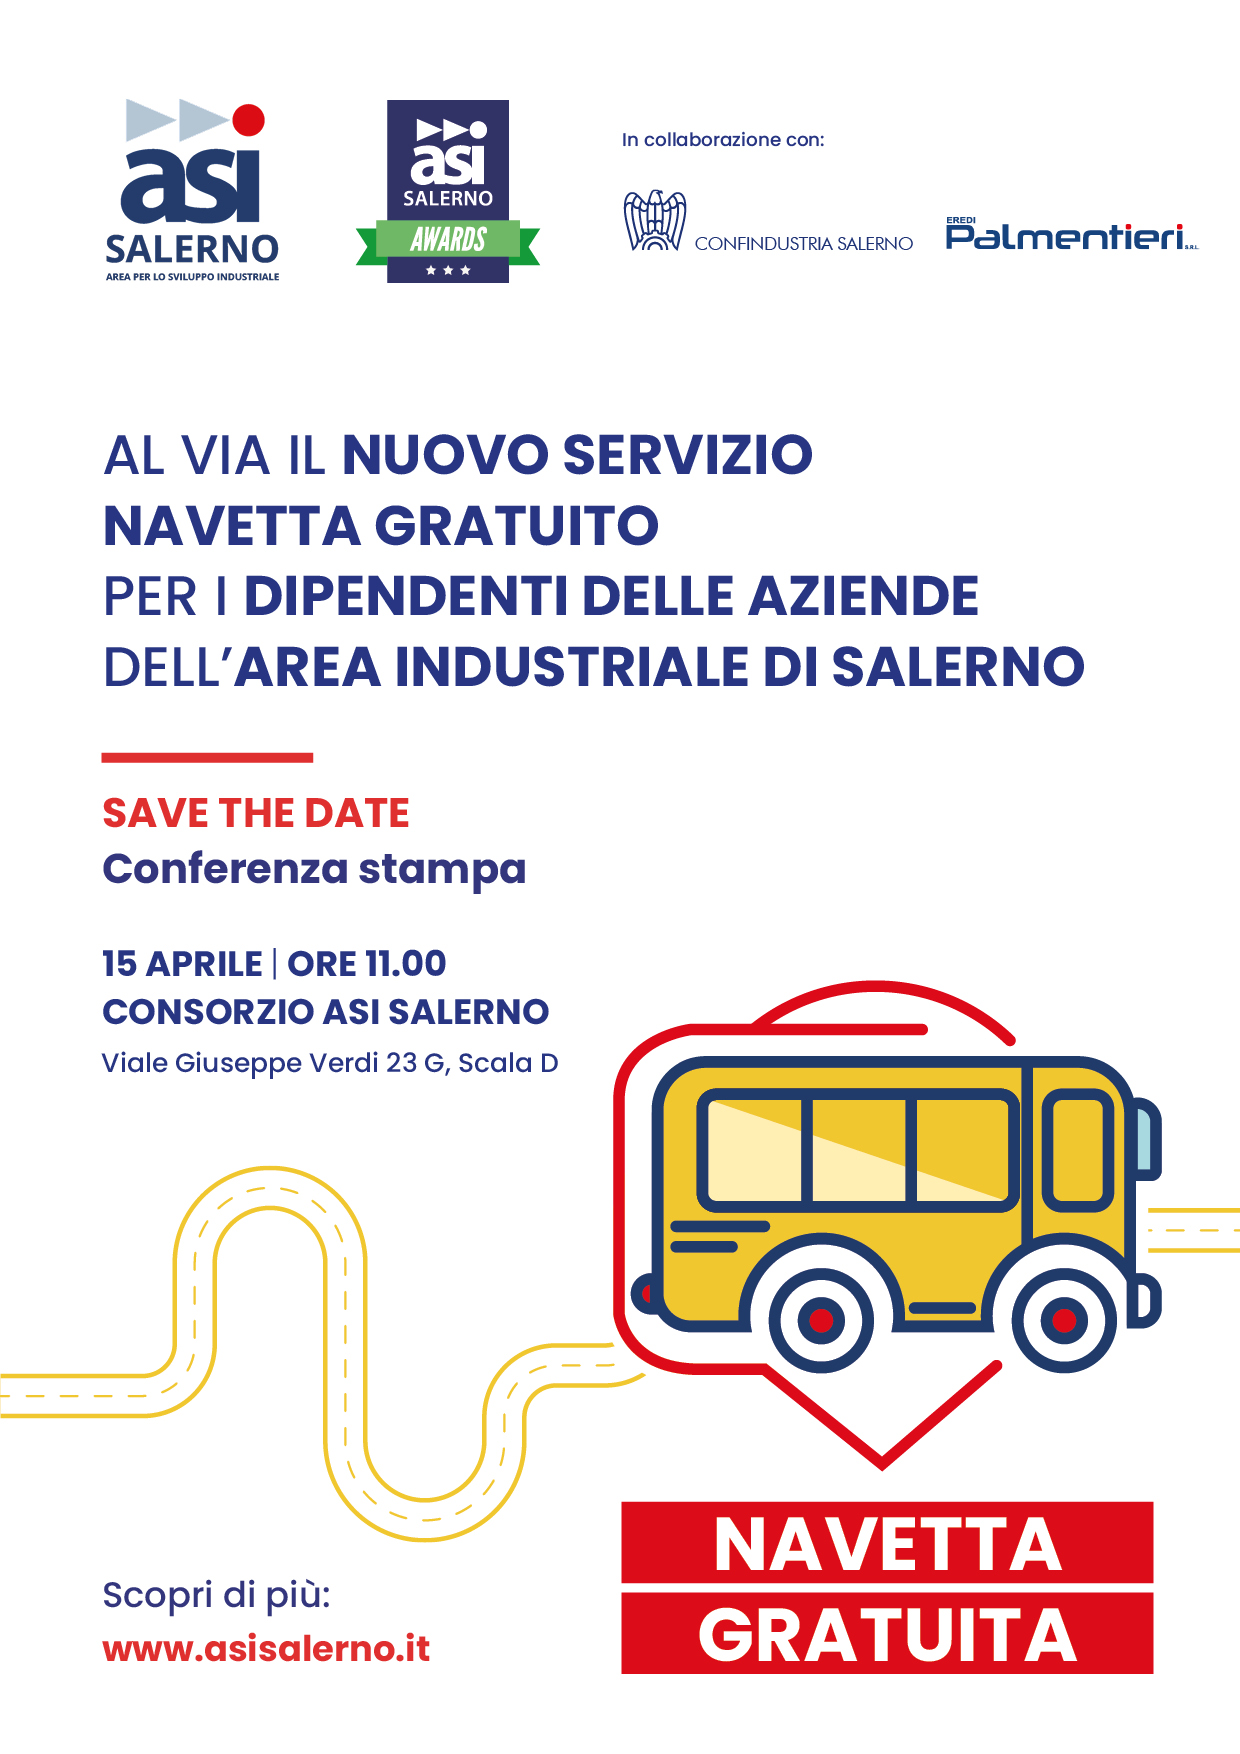 Salerno: ASI, navette gratuite per dipendenti aziendali, conferenza stampa